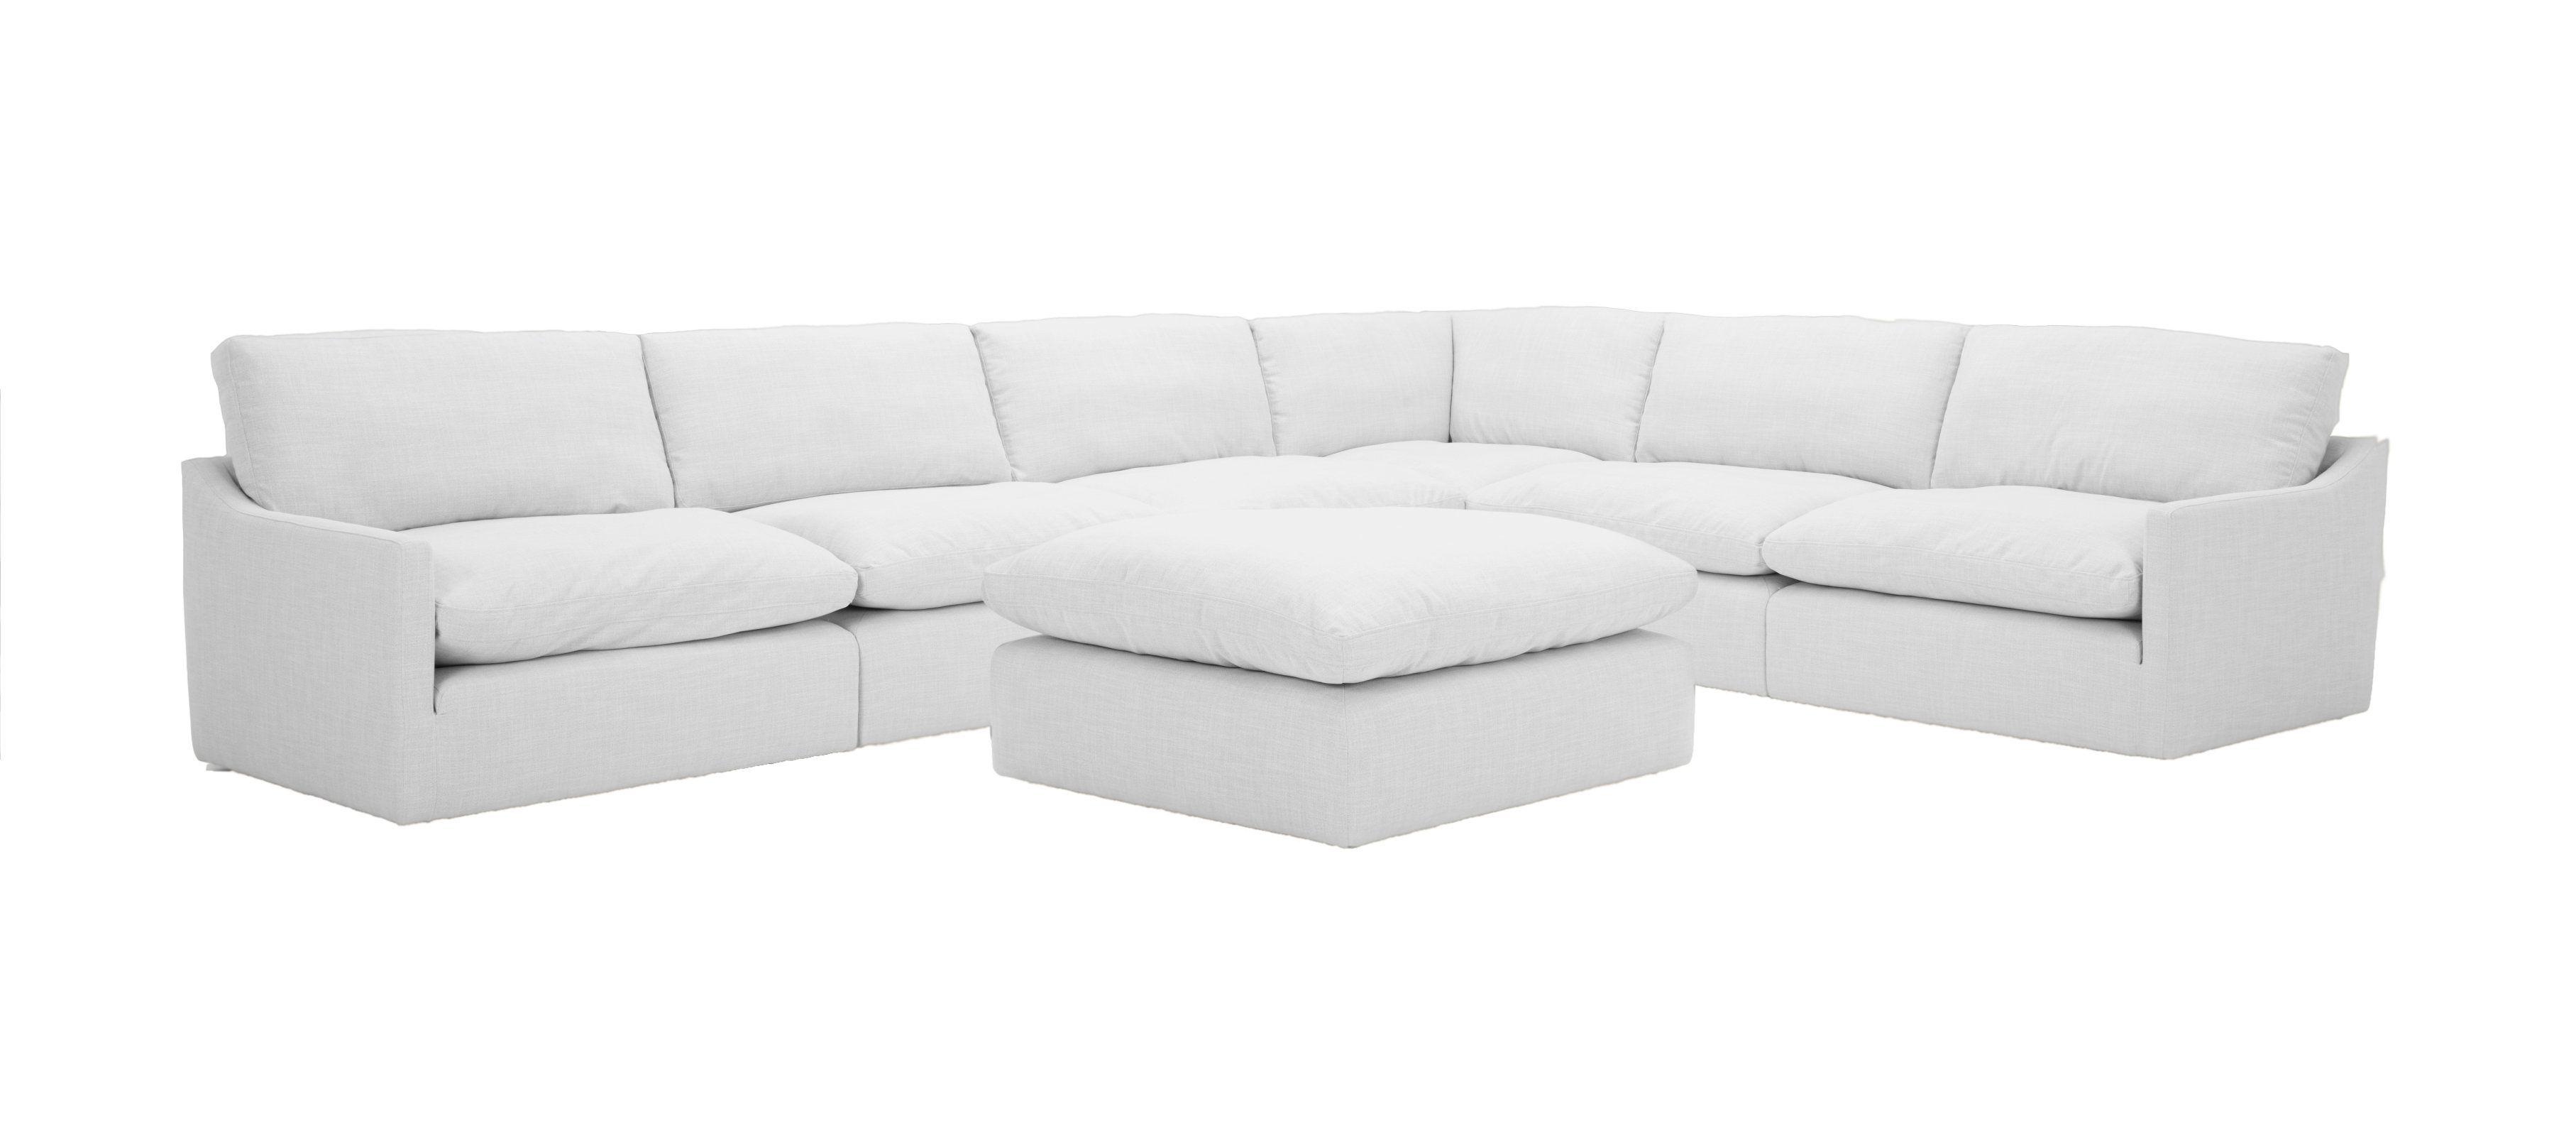 Contemporary, Modern Modular Sectional Sofa VGKNK8608-SNOWWHT-SET VGKNK8608-SNOWWHT-SET in White Fabric